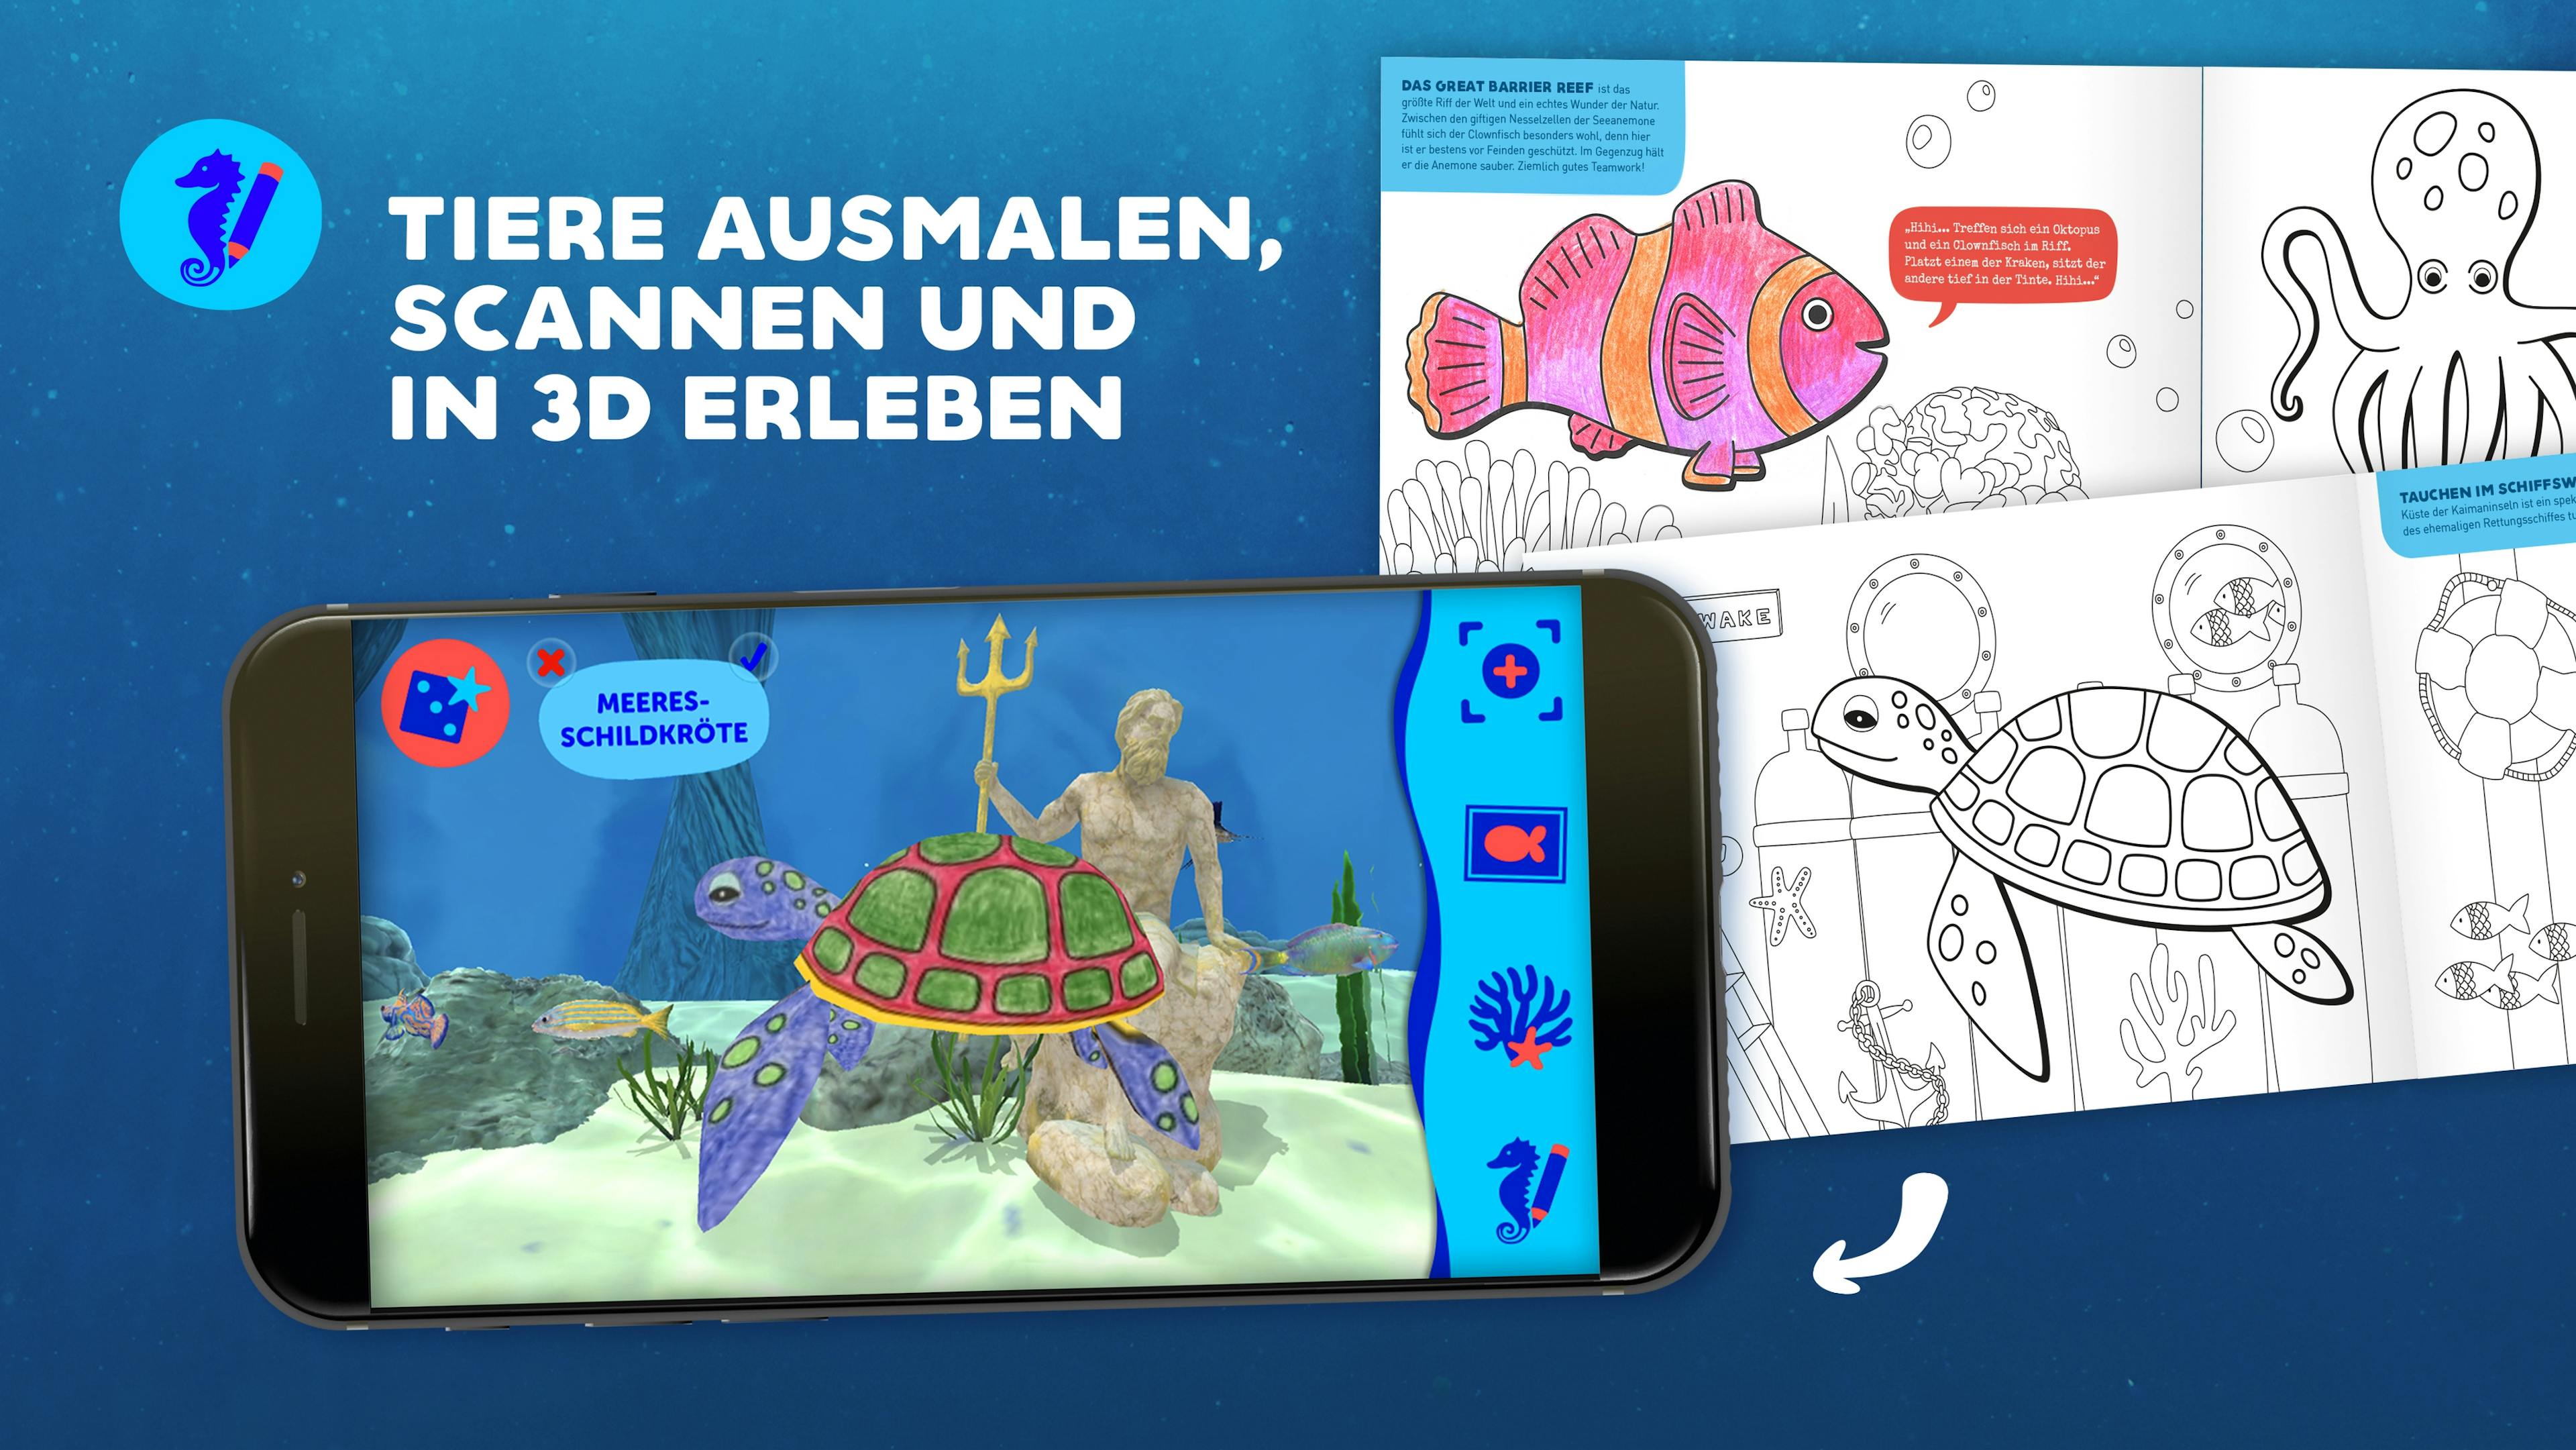 Vorschaubild der Stickermania Atlantis Unterwasser-App mit einer Schildkröte im Bild, die aus dem Malbuch gescannt wurde © good matters x gobiq